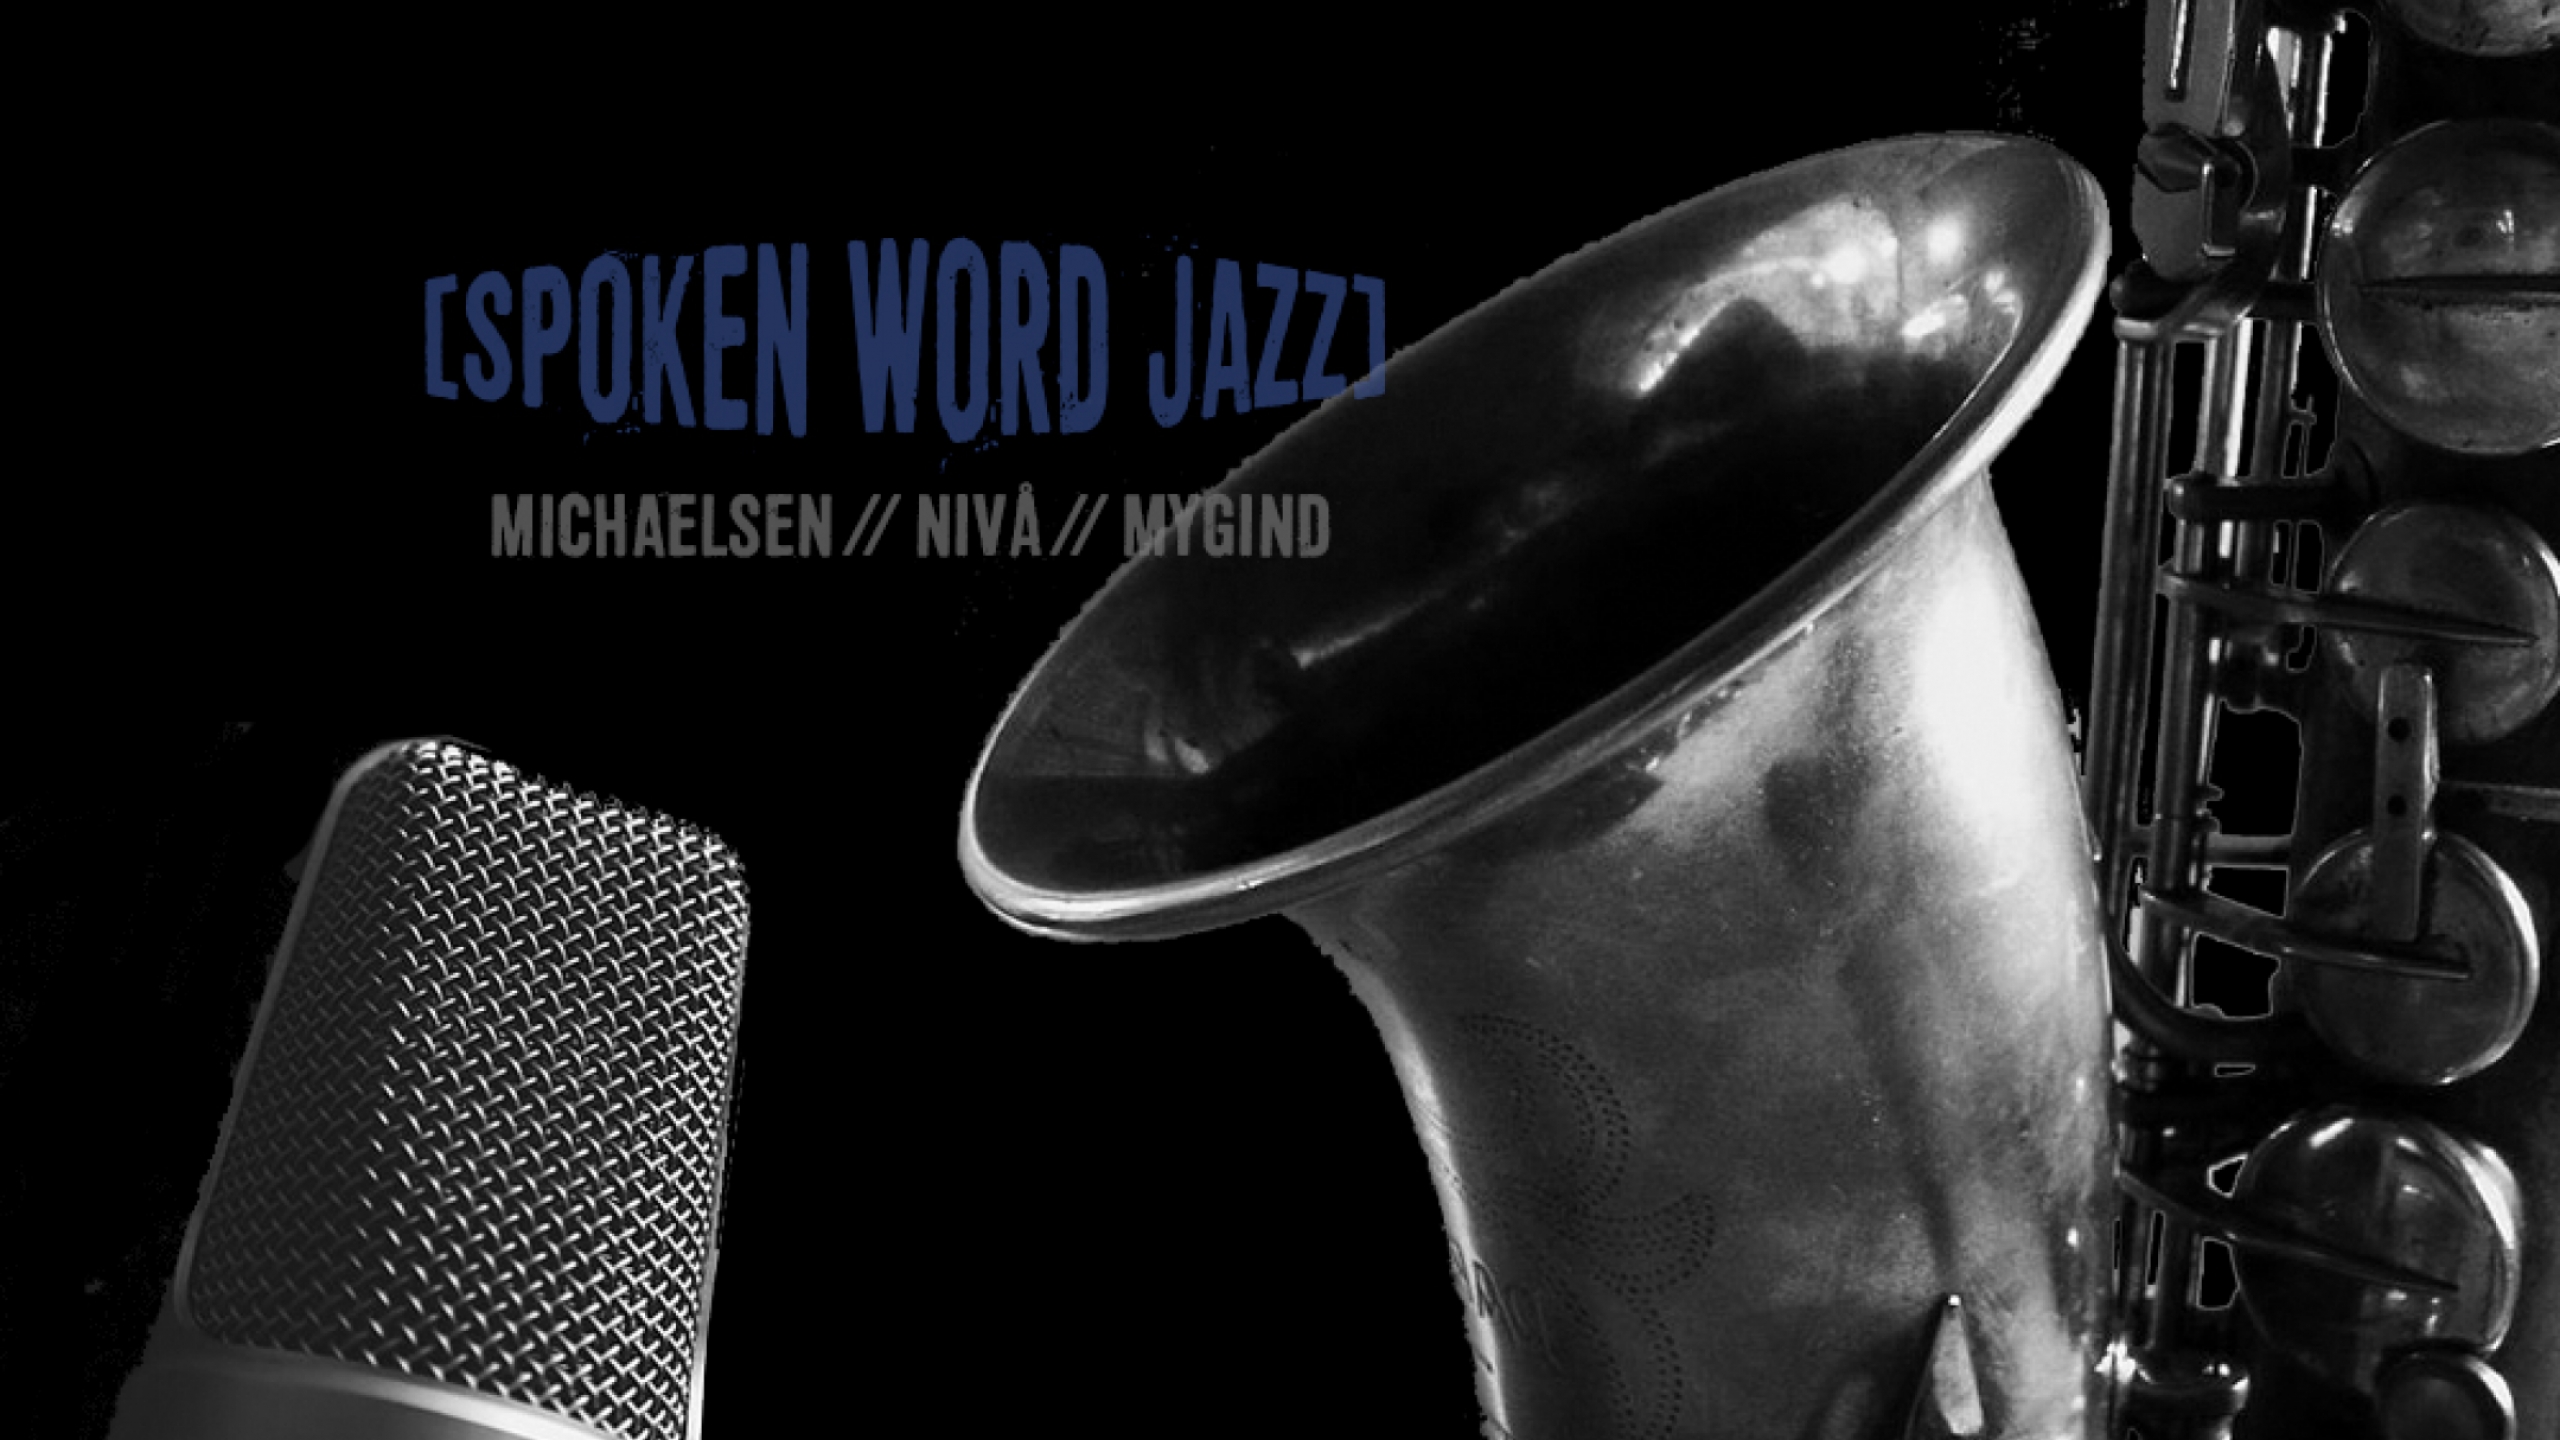 spoken_word_jazz